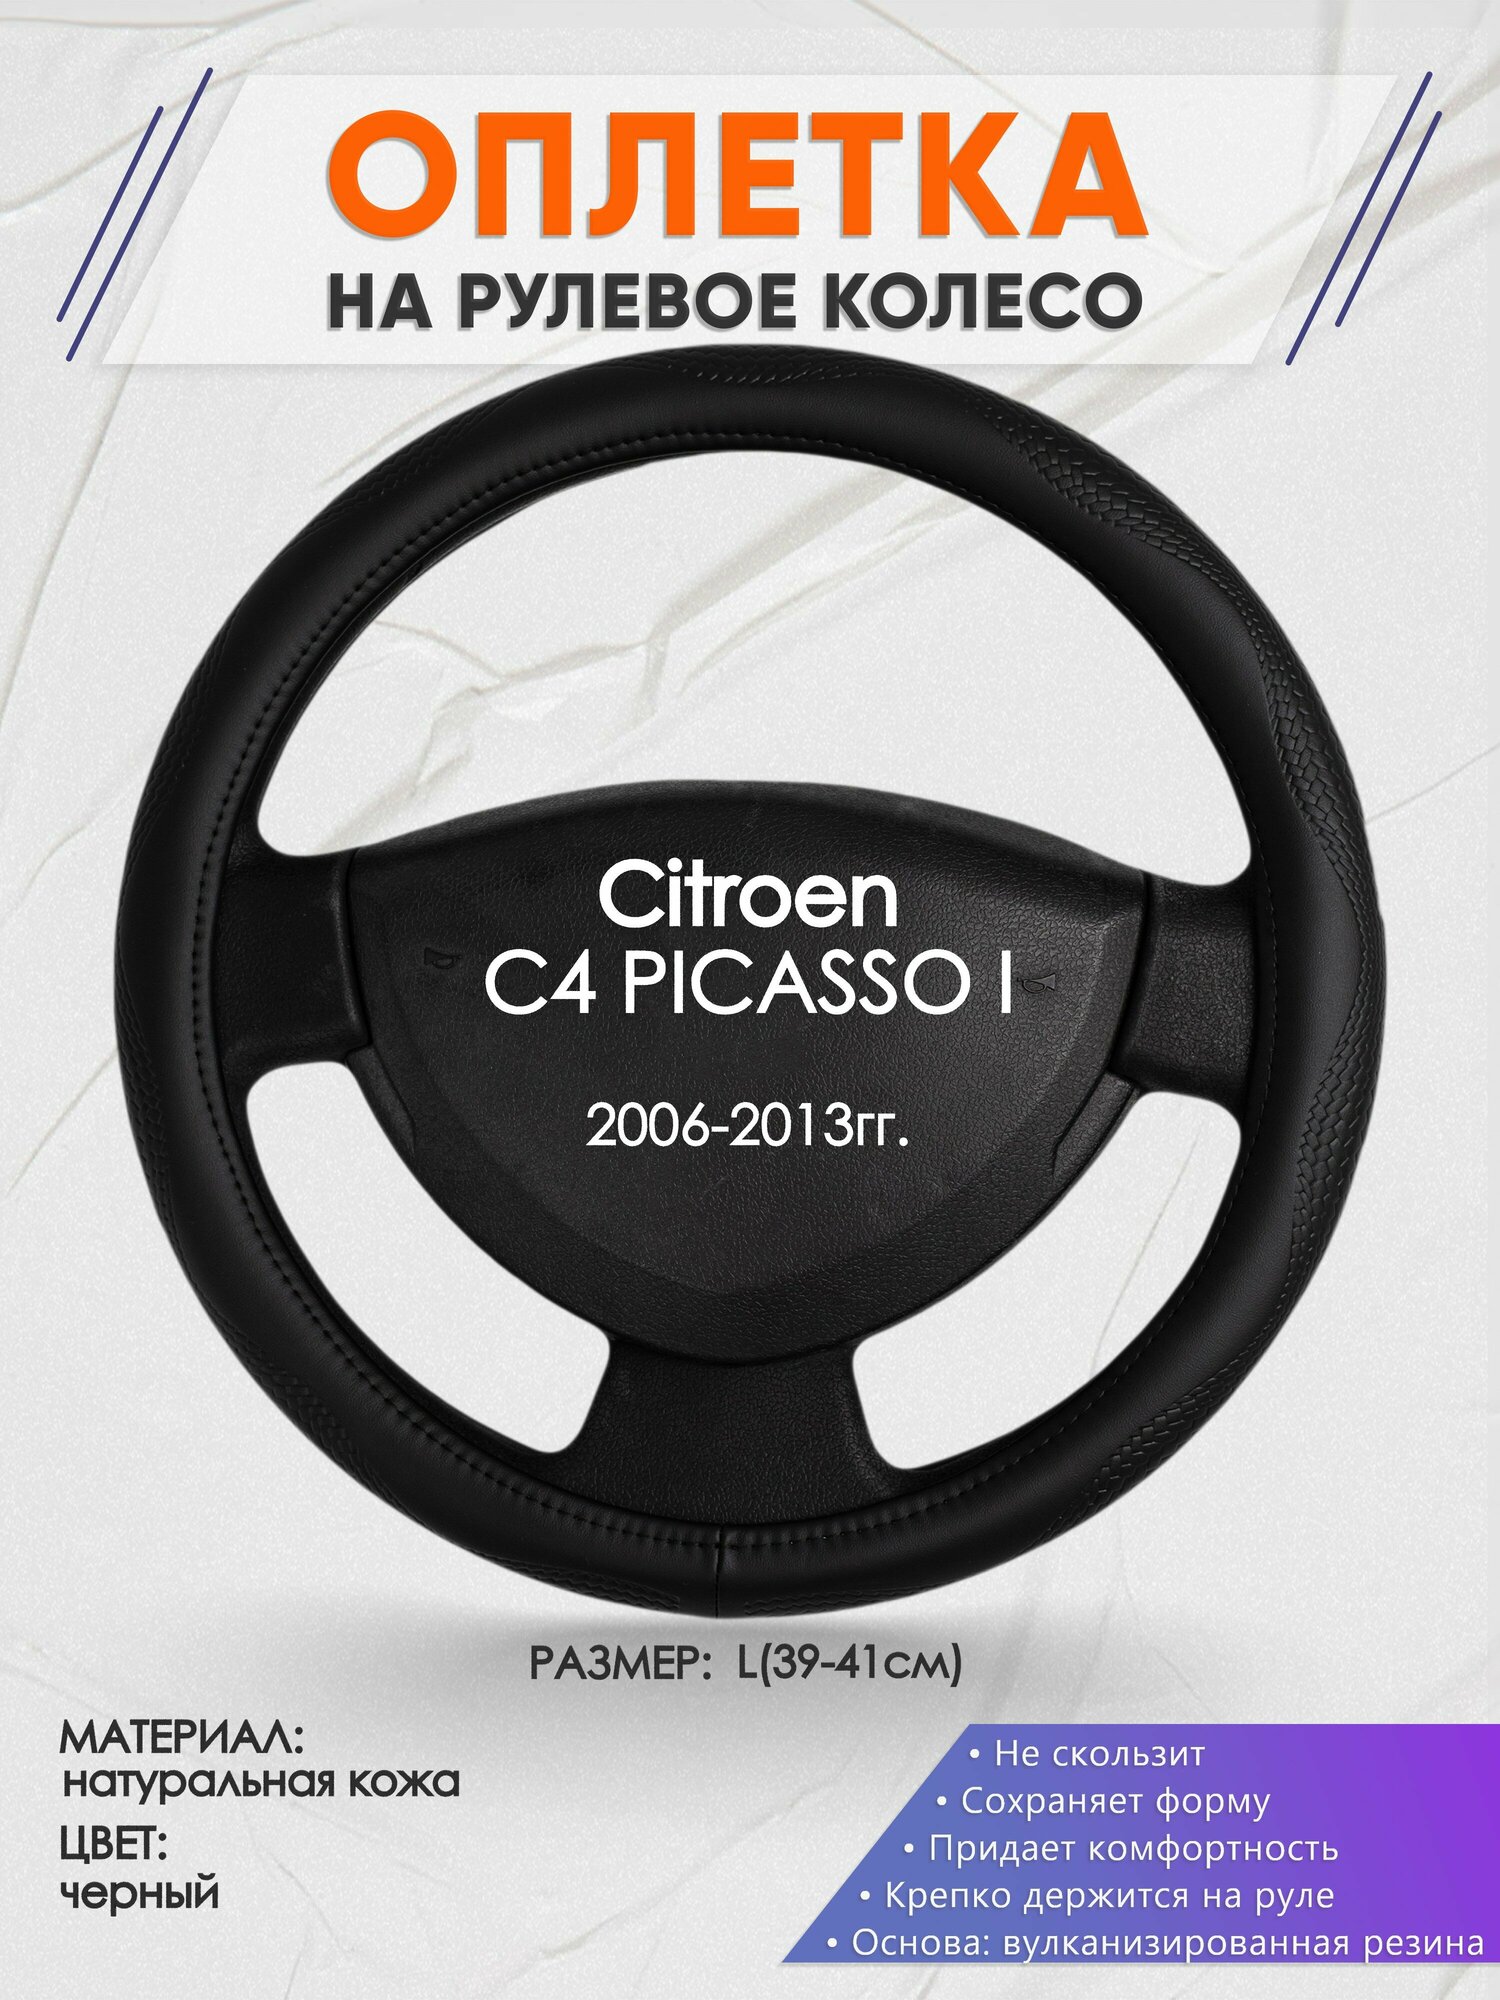 Оплетка на руль для Citroen C4 PICASSO I(Ситроен С4 Пикассо) 2006-2013, L(39-41см), Натуральная кожа 32